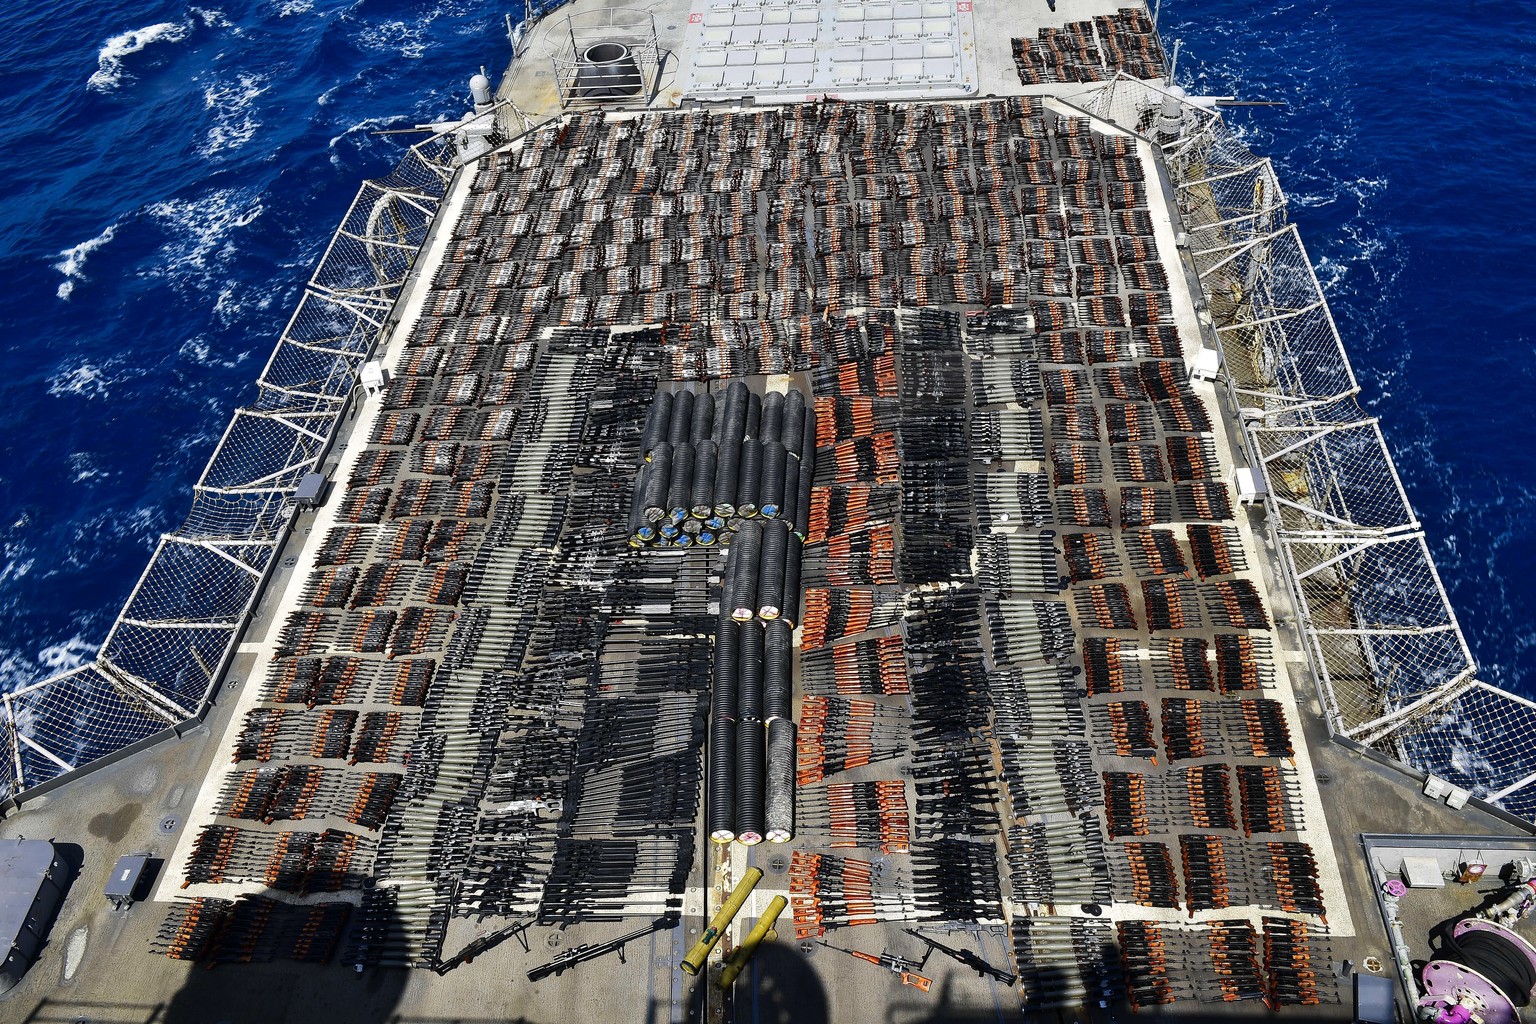 Das Deck der USS Monterey – bedeckt mit Schmuggelware.